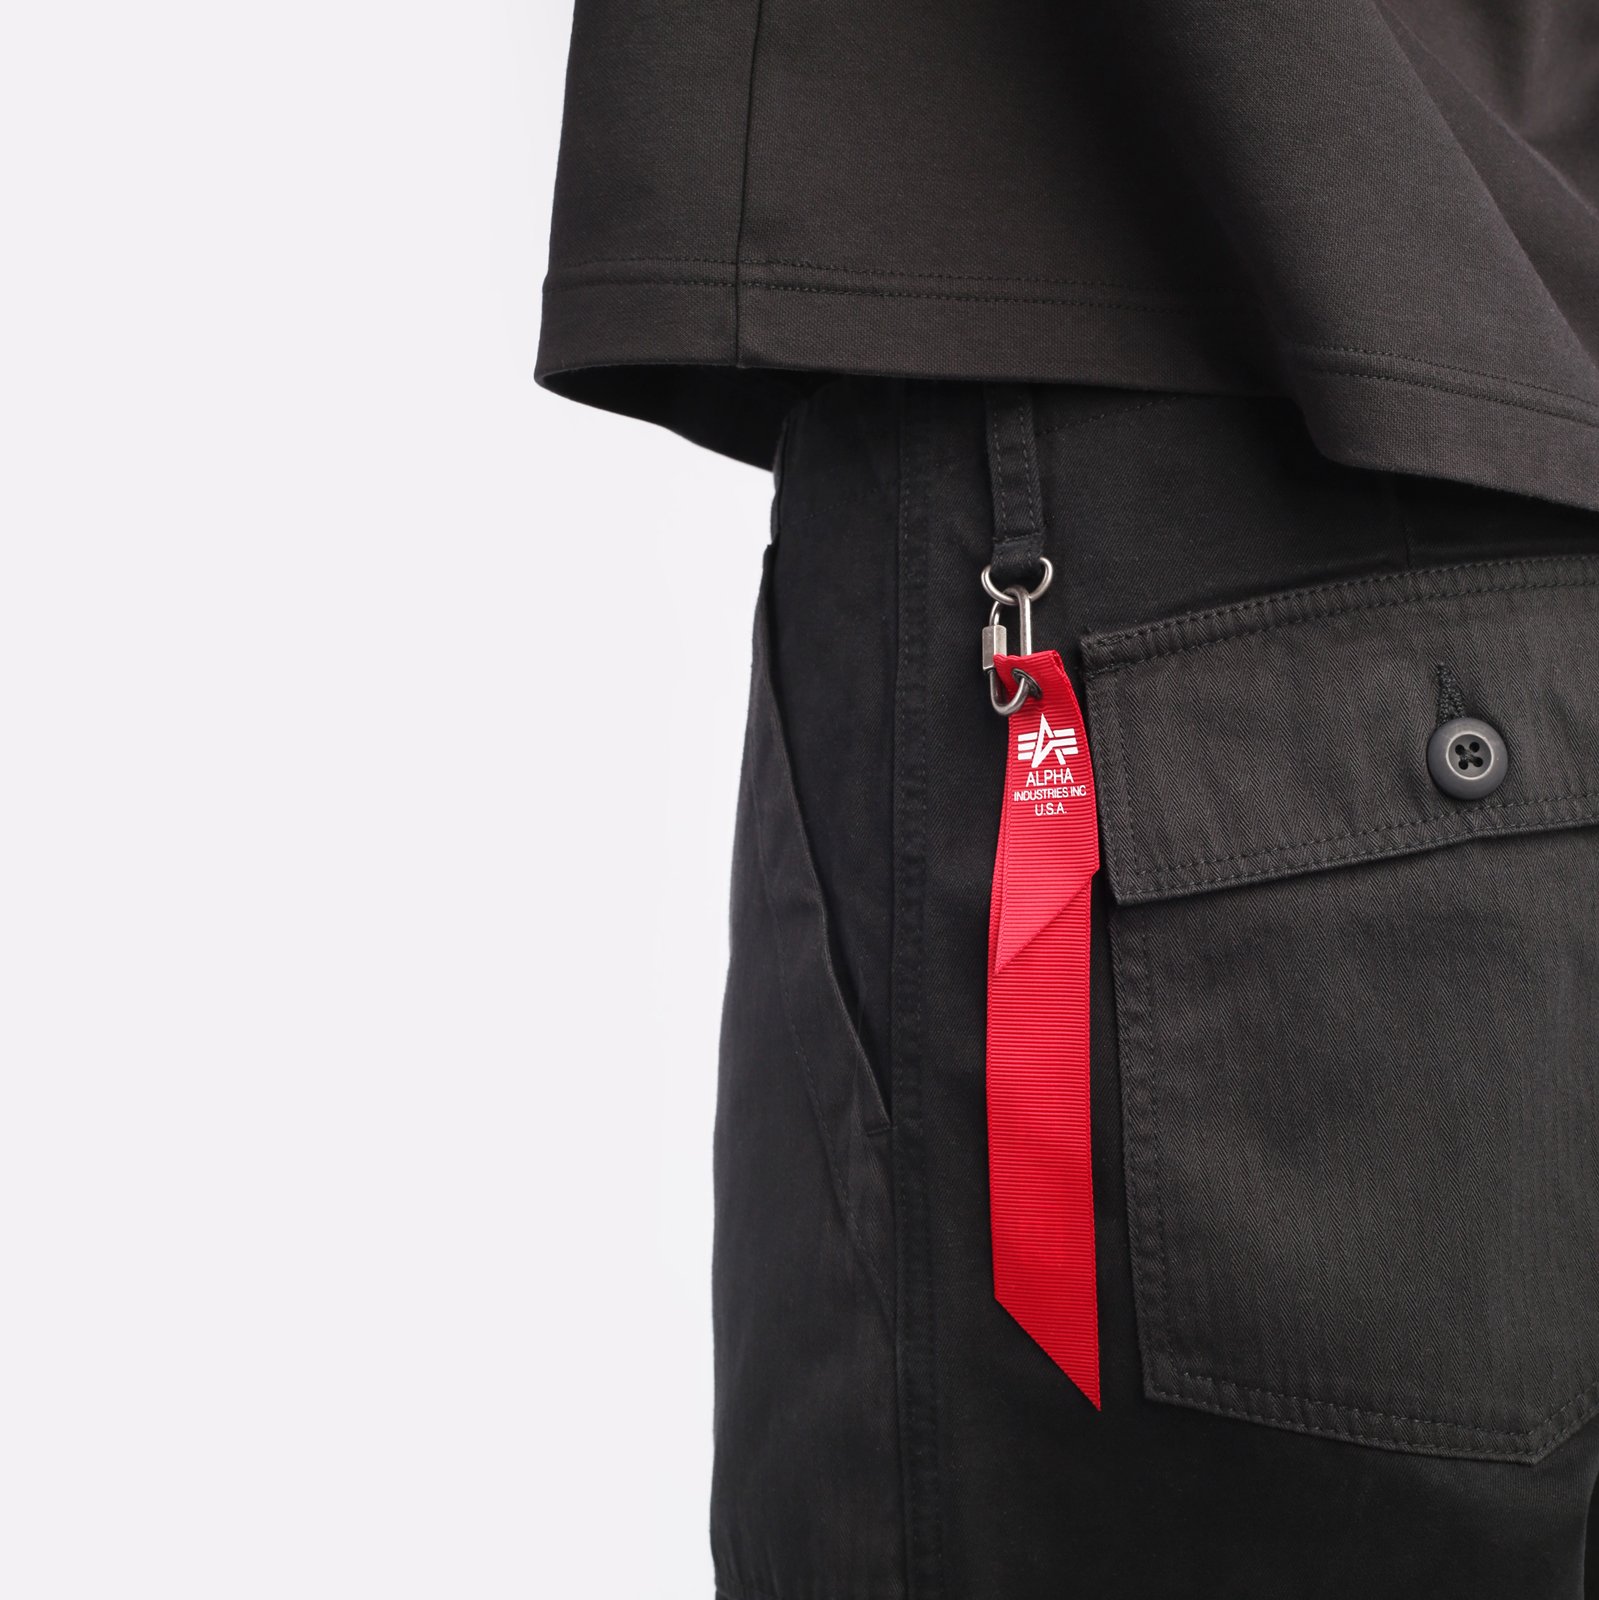 мужские брюки Alpha Industries Fatigue Pant  (MBO52500C1-black)  - цена, описание, фото 4